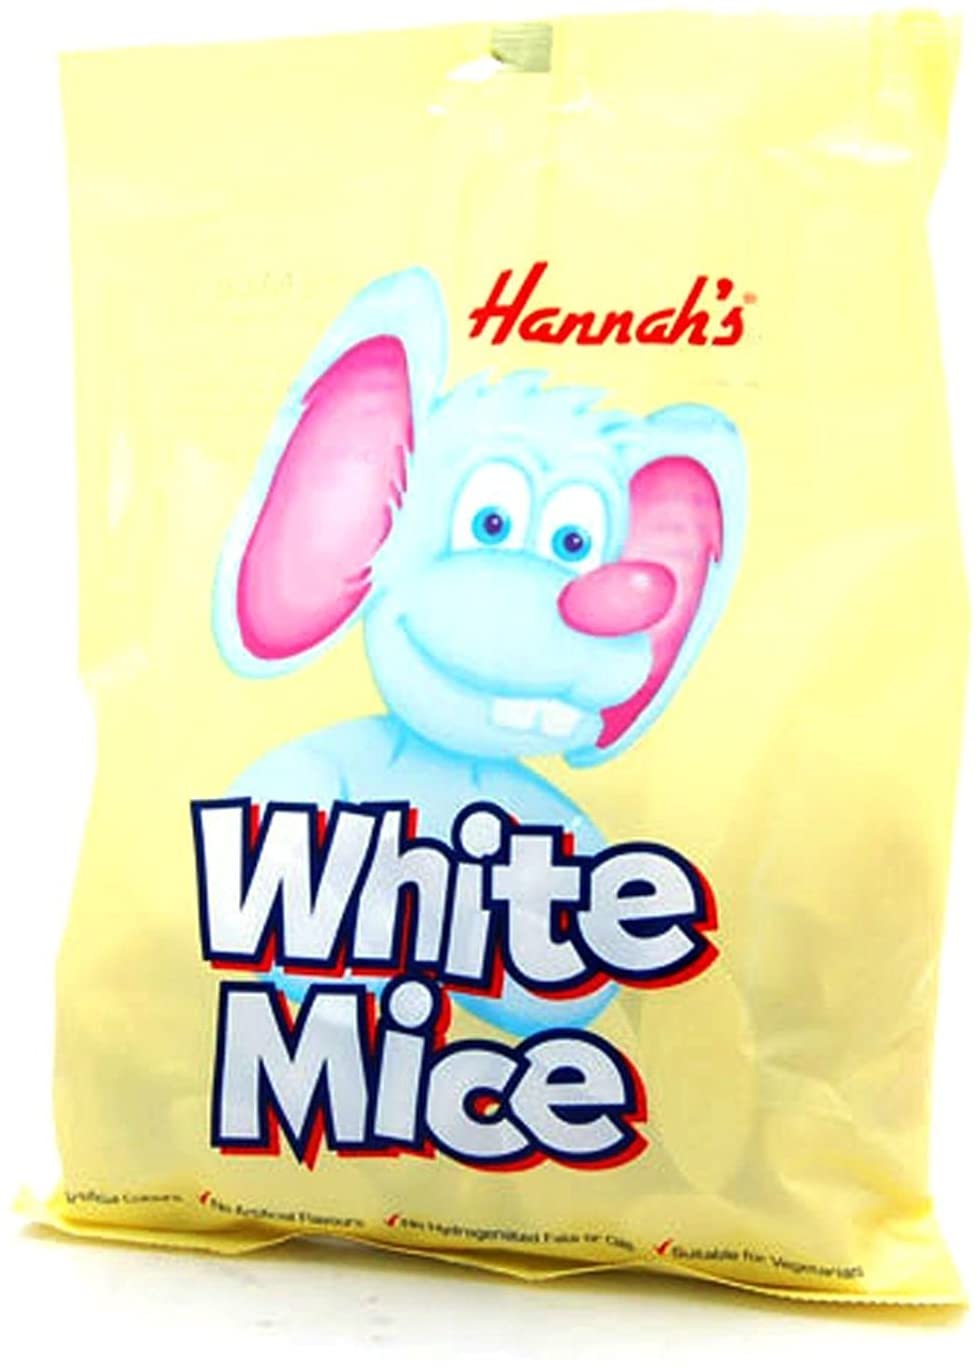 Hannah White Mice 50c